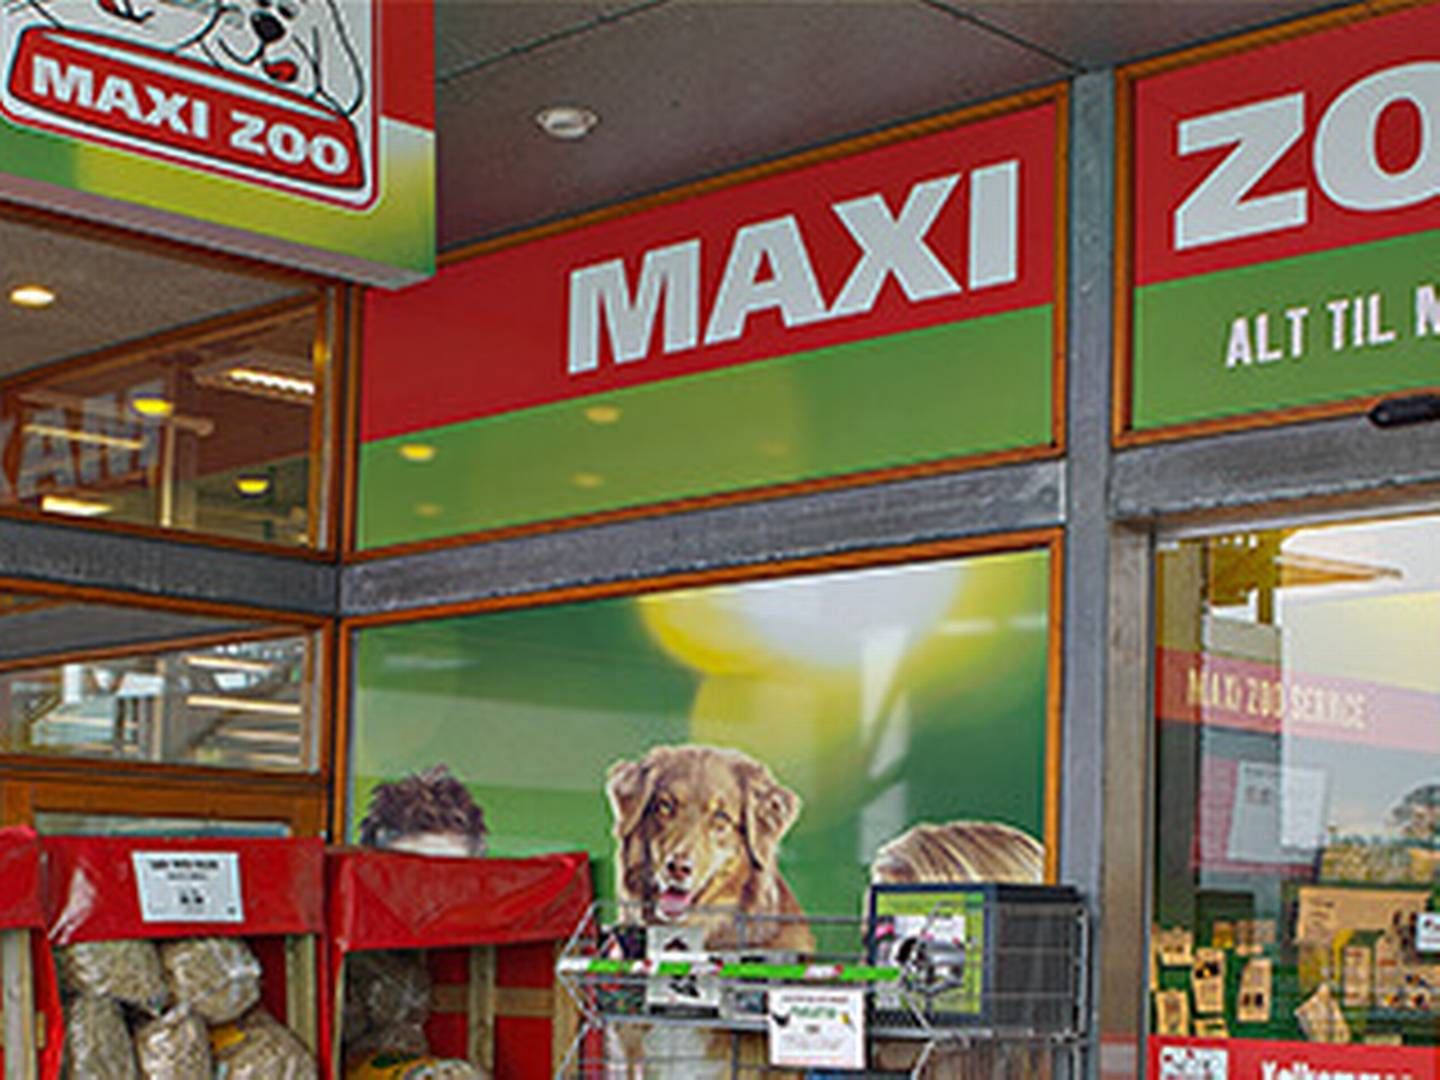 Maxi Zoo forventer, kæledyrsmarkedet vil fortsætte med at vokse i Danmakr. | Foto: Maxi Zoo/pr